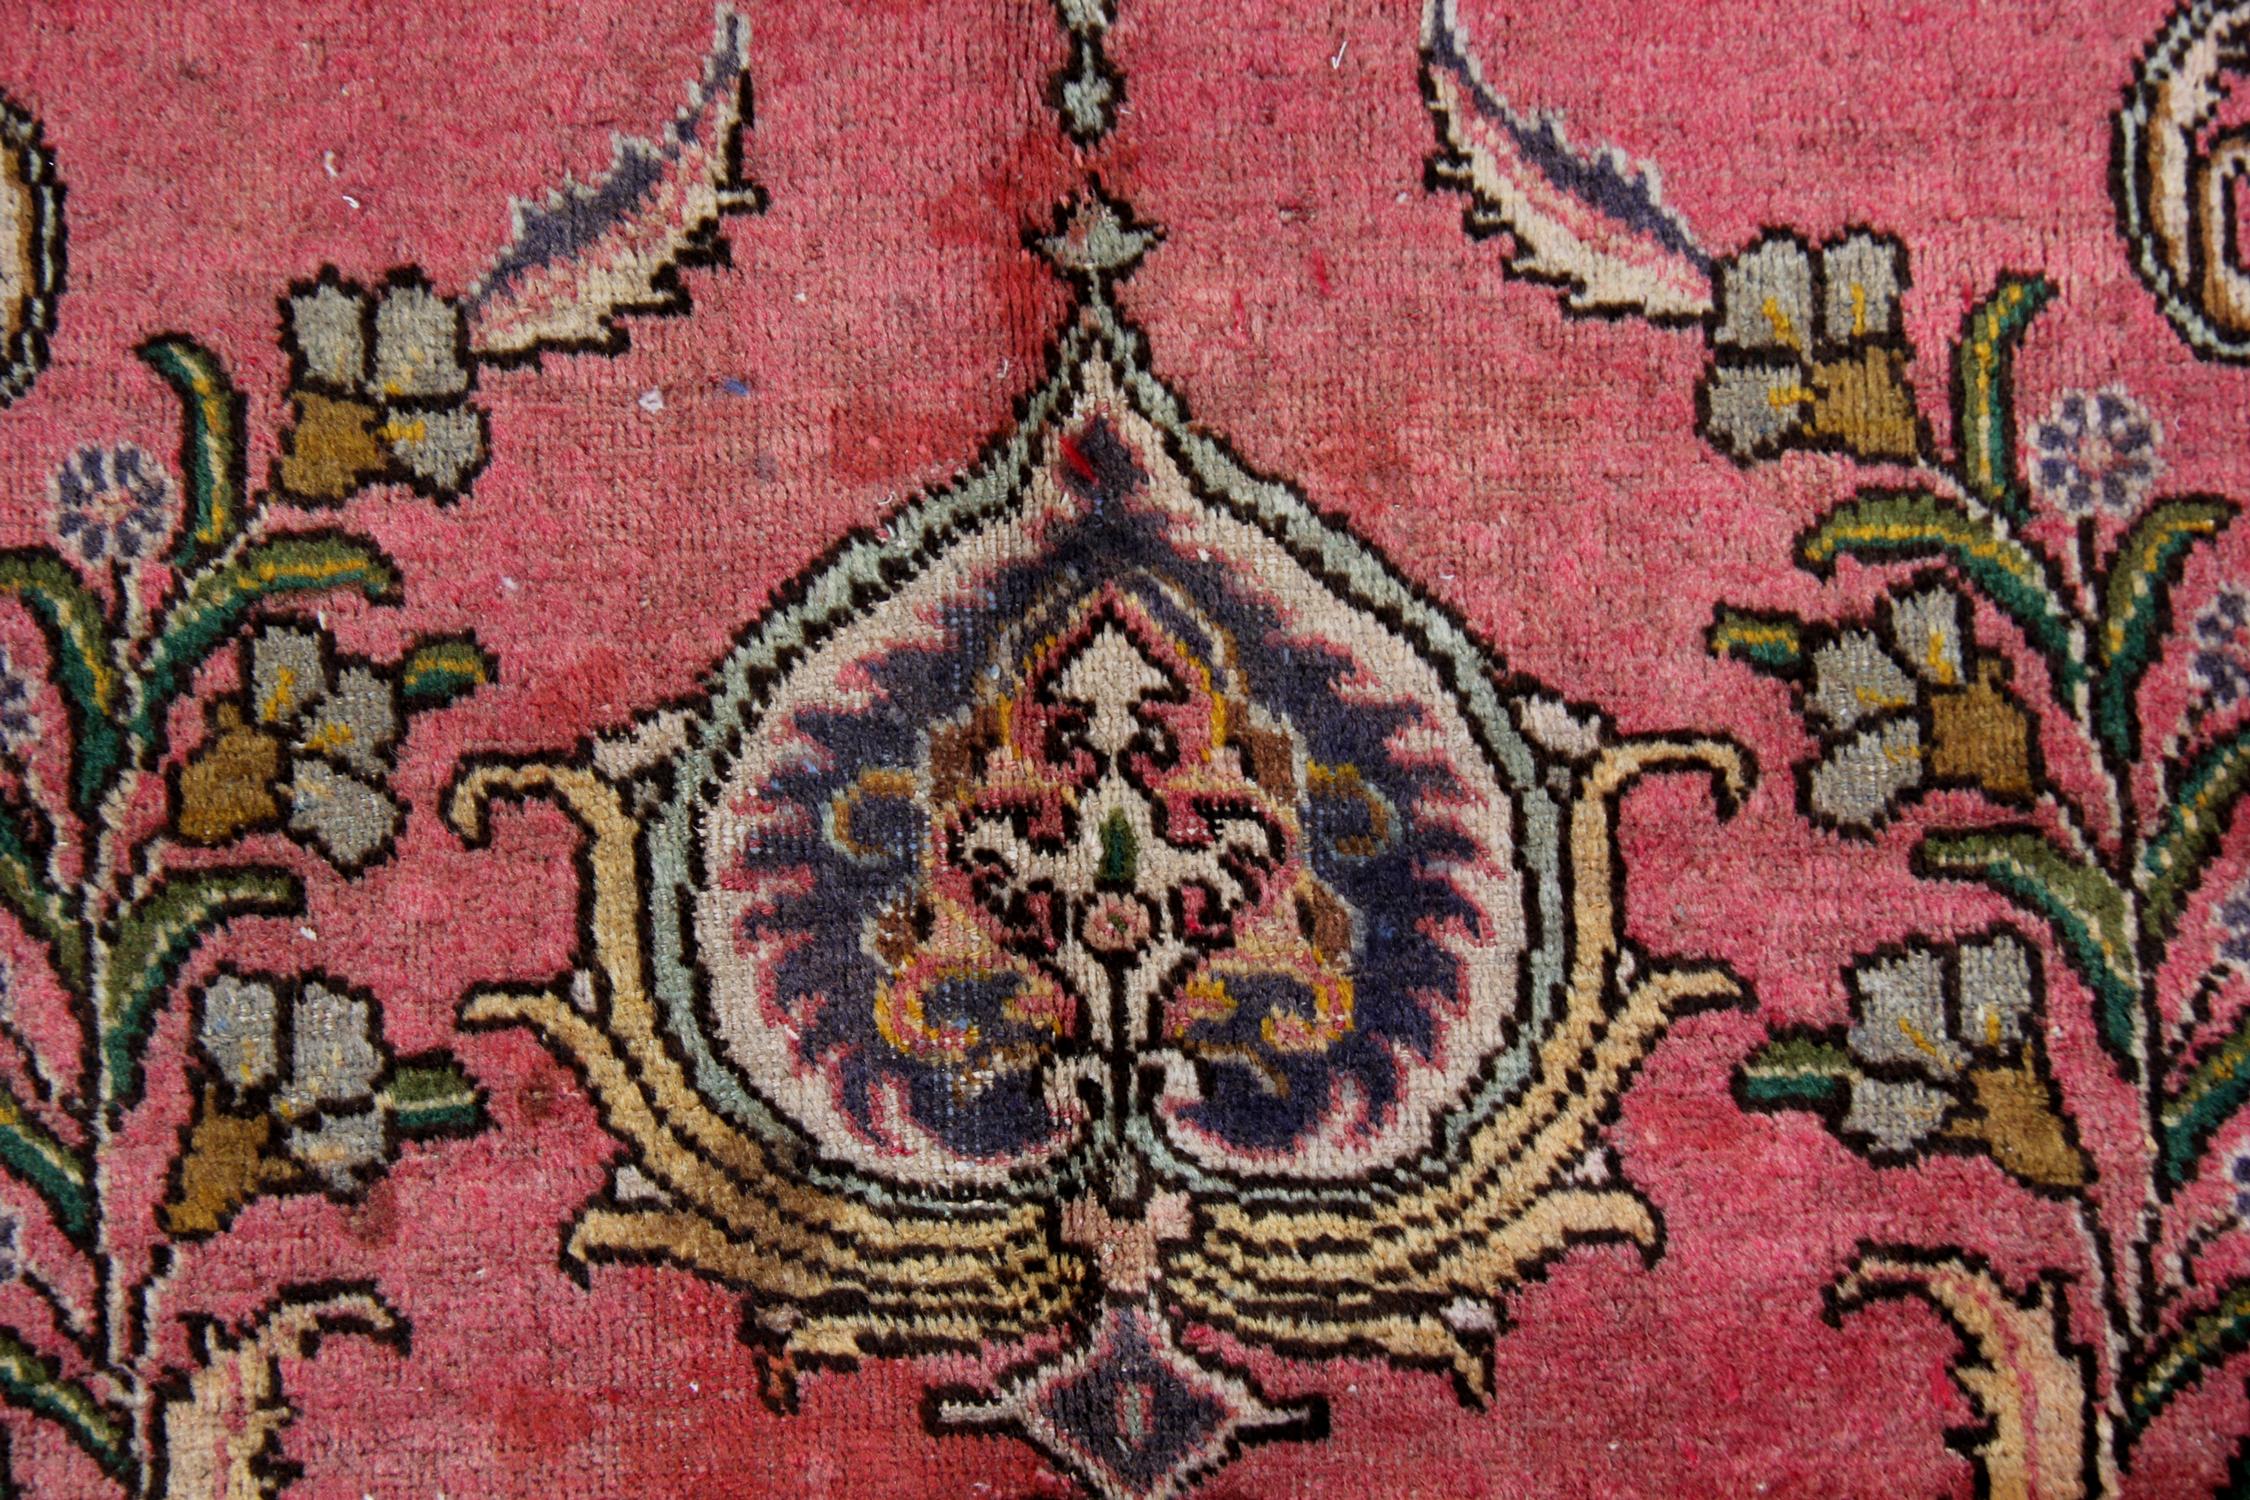 Dieser luxuriöse Teppich wurde mit einem satten weinroten Hintergrund mit cremefarbenen, blauen, grünen und rosafarbenen Akzenten gewebt, die das komplizierte, hochdekorative Medaillon und das umgebende Design bilden. Das schwebende Medaillon und